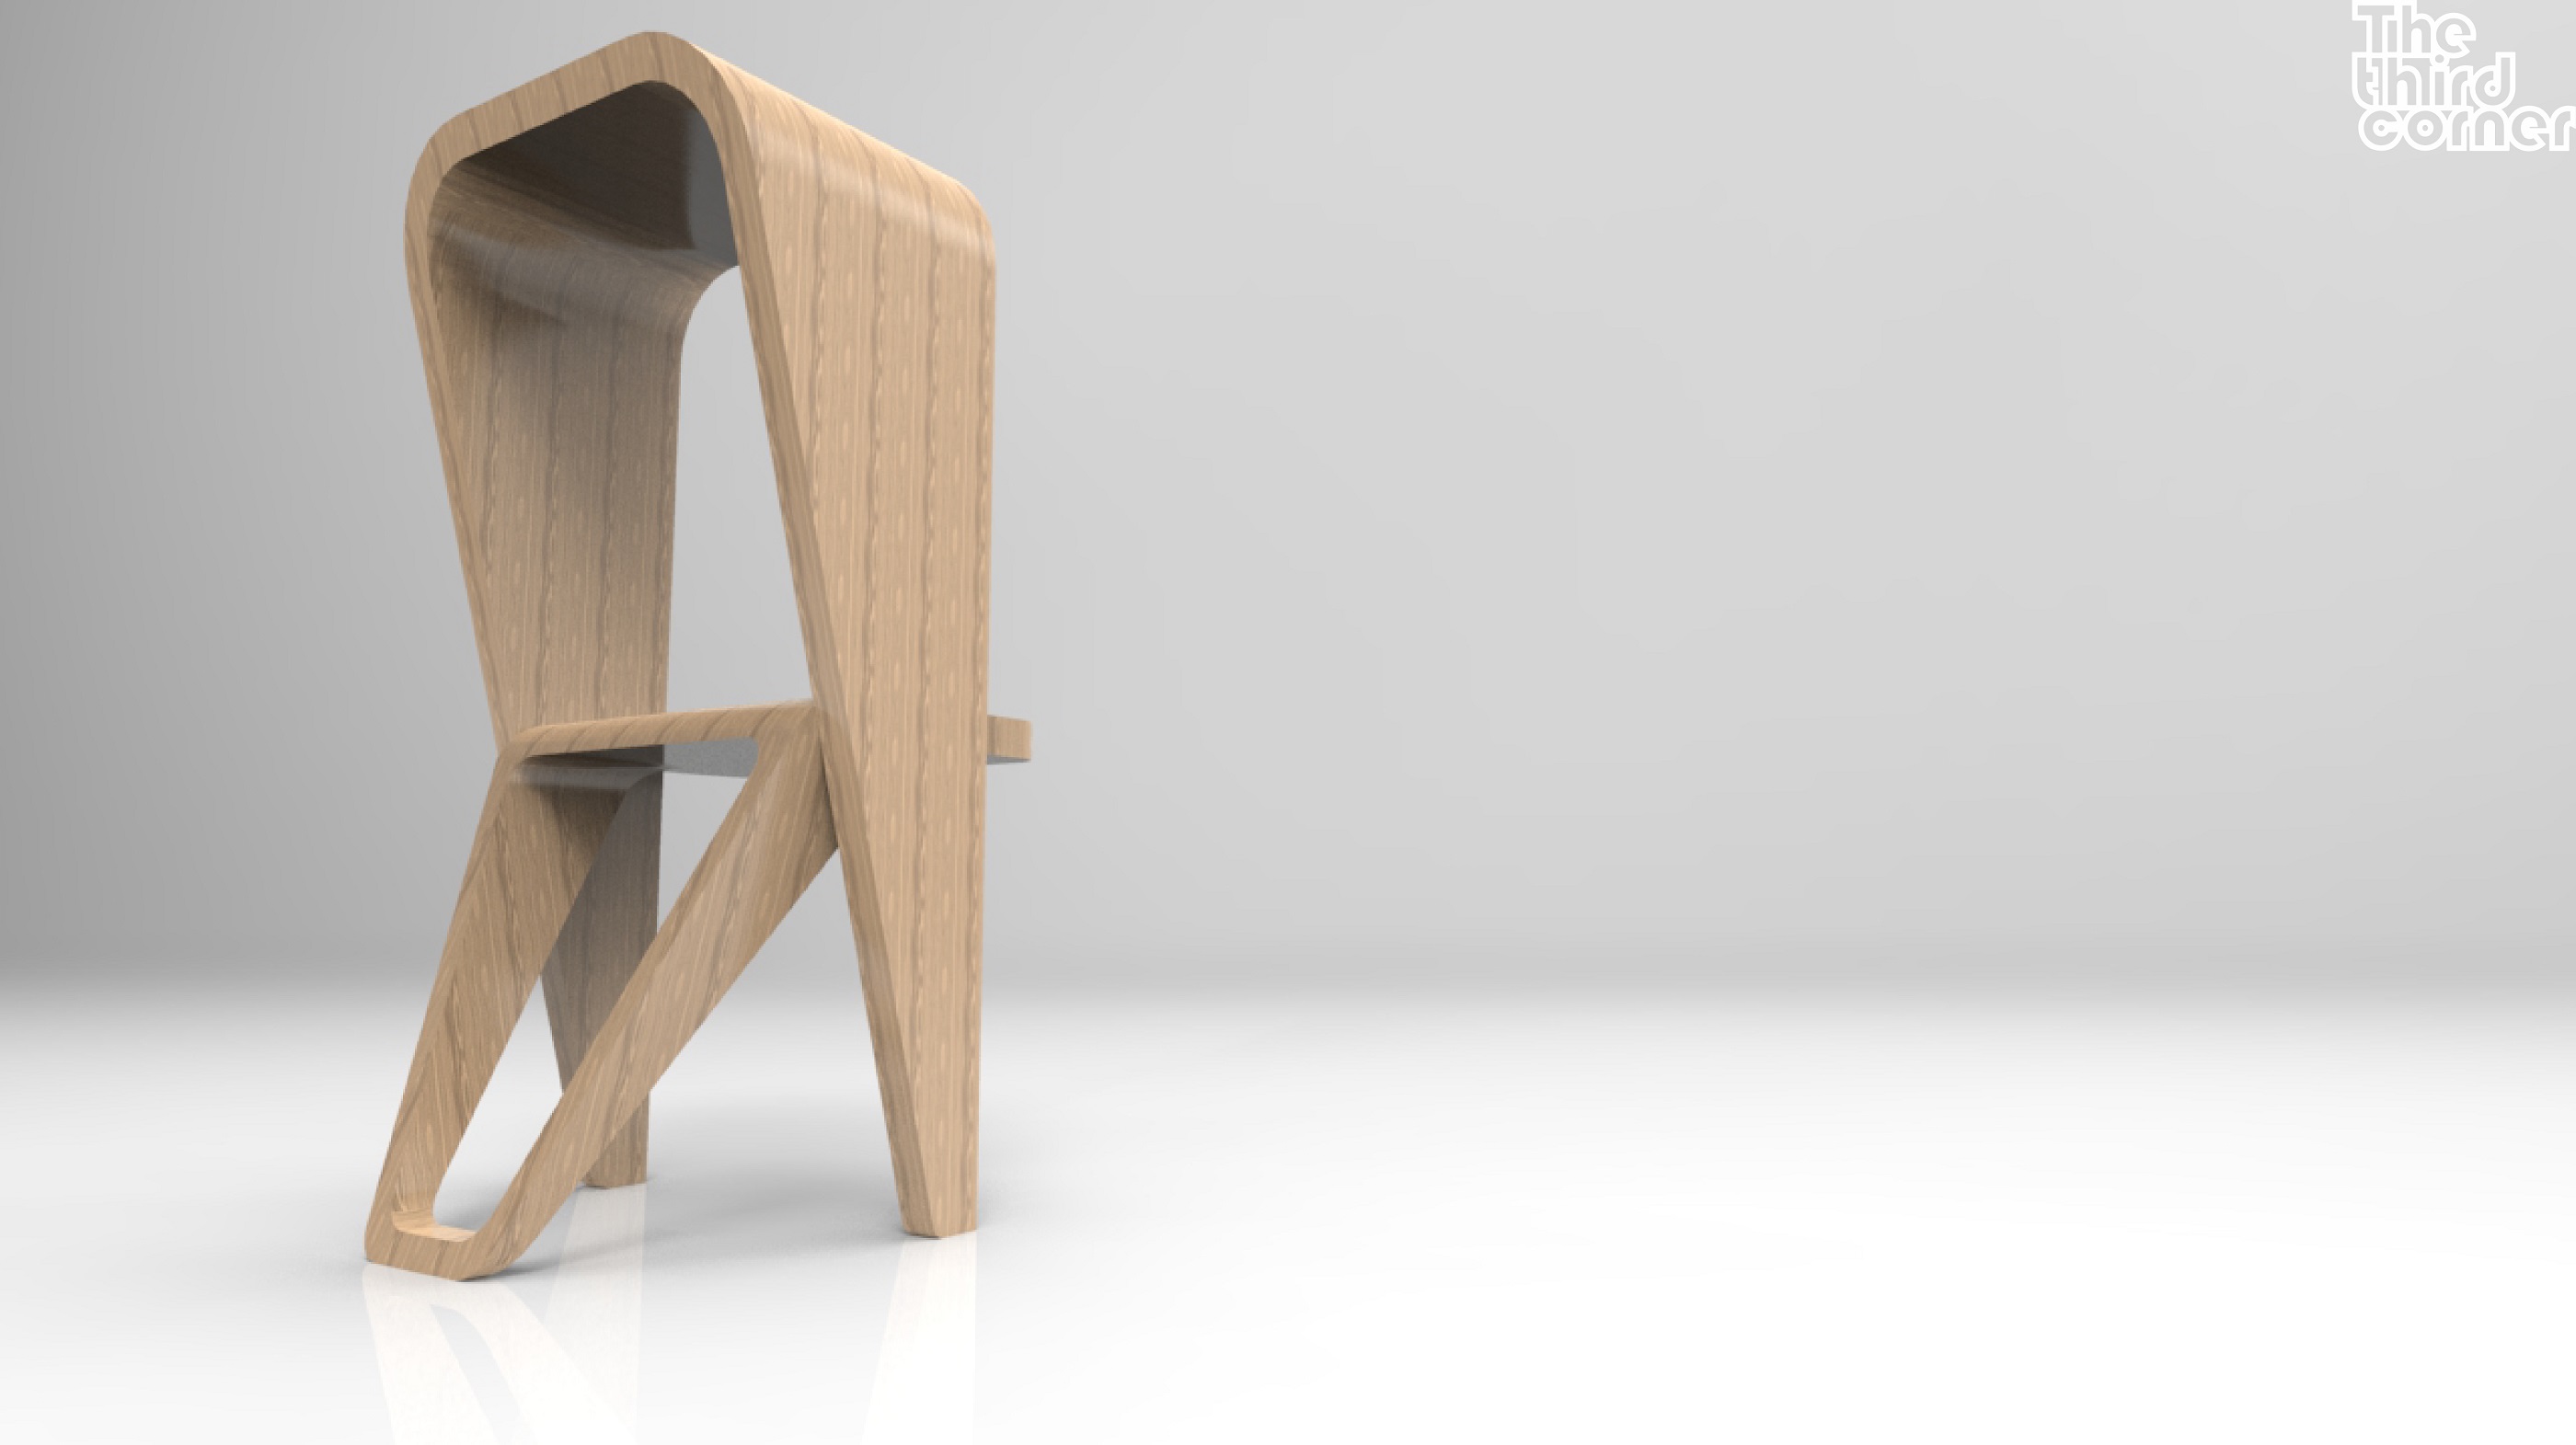 「第三個角落The third corner」作品發想源自於書架頂端的書怎麼取？又想結合舒適的椅子，因此設計出這張實用又富設計感的椅子